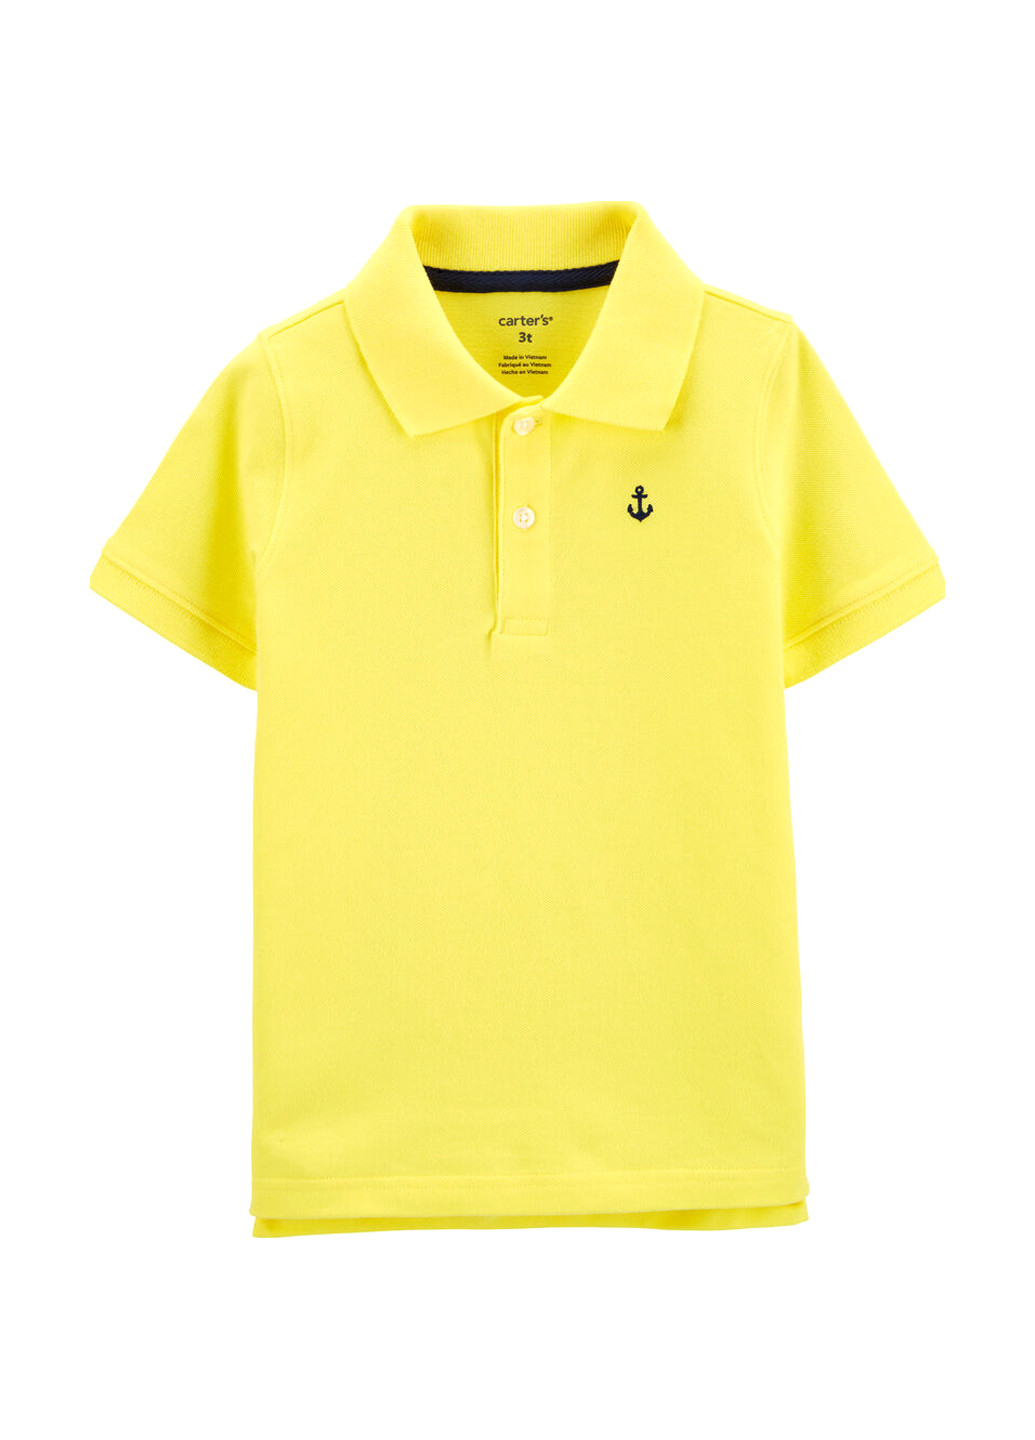 Желтая детская футболка-поло для мальчика Carter's однотонная